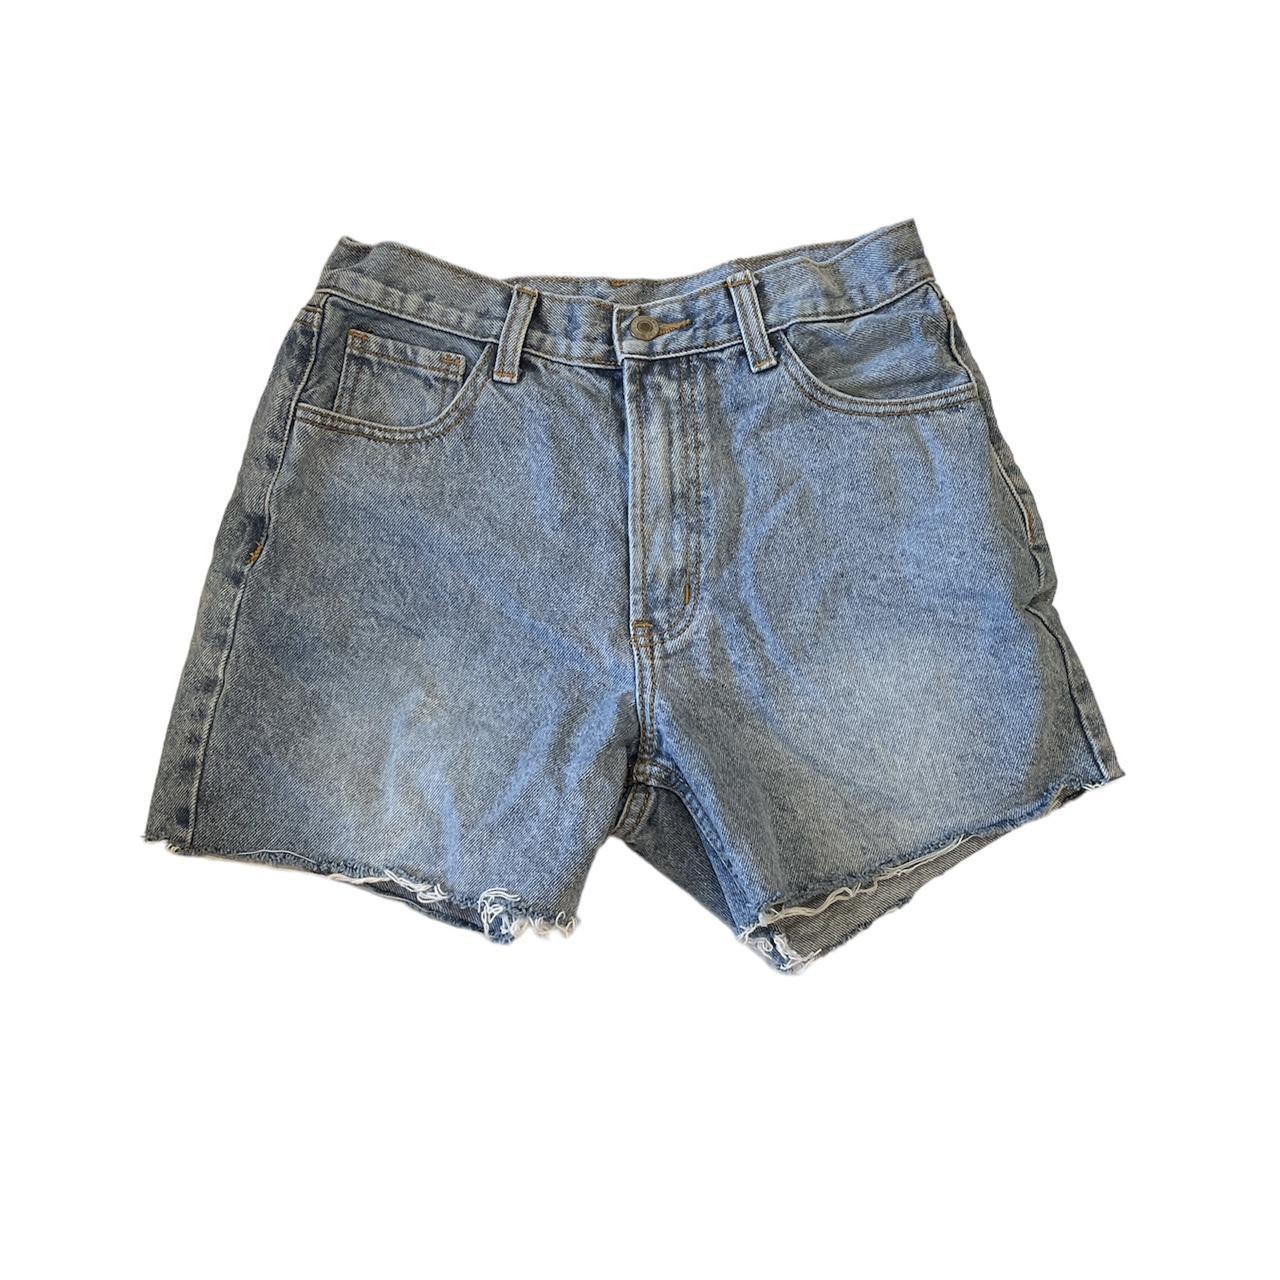 Brandy Melville Summer Denim Shorts for Women